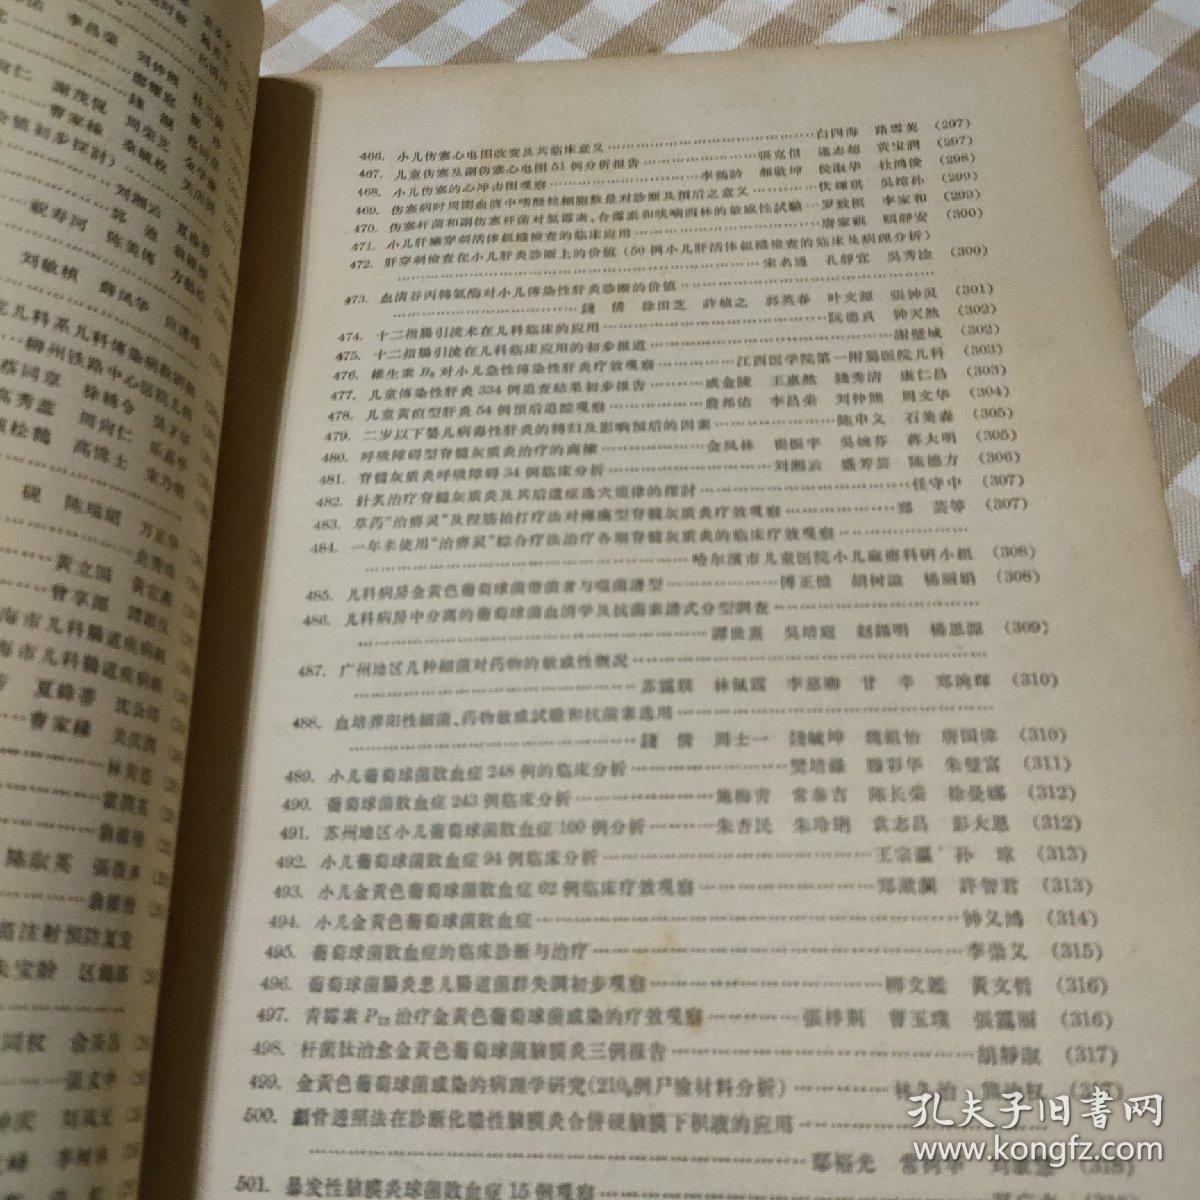 中华医学会第六届全国儿科学术会议论文摘要1964